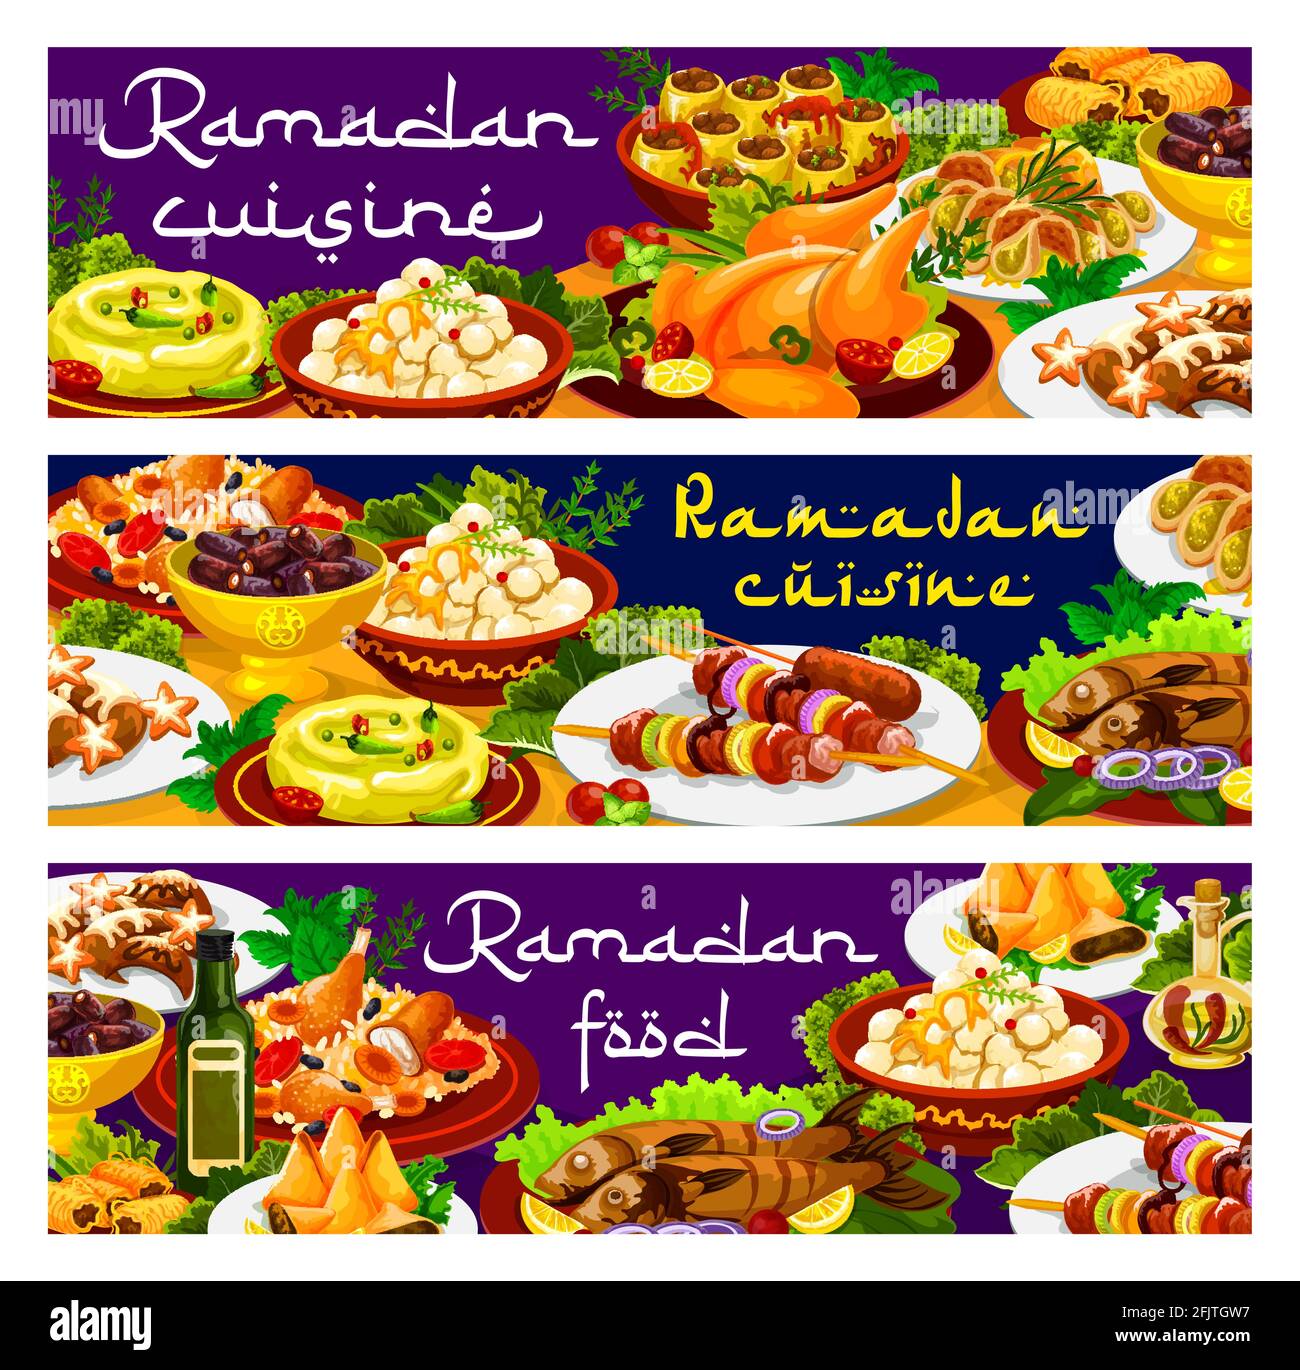 Ramadan-Essen, Iftar biryani- und Eid Mubarak-Gerichte, Gerichte der islamischen Speisekarte, Vektorbanner. Ramadan Kareem traditionelle Iftar-Speisen und religiöse Fastenkuis Stock Vektor